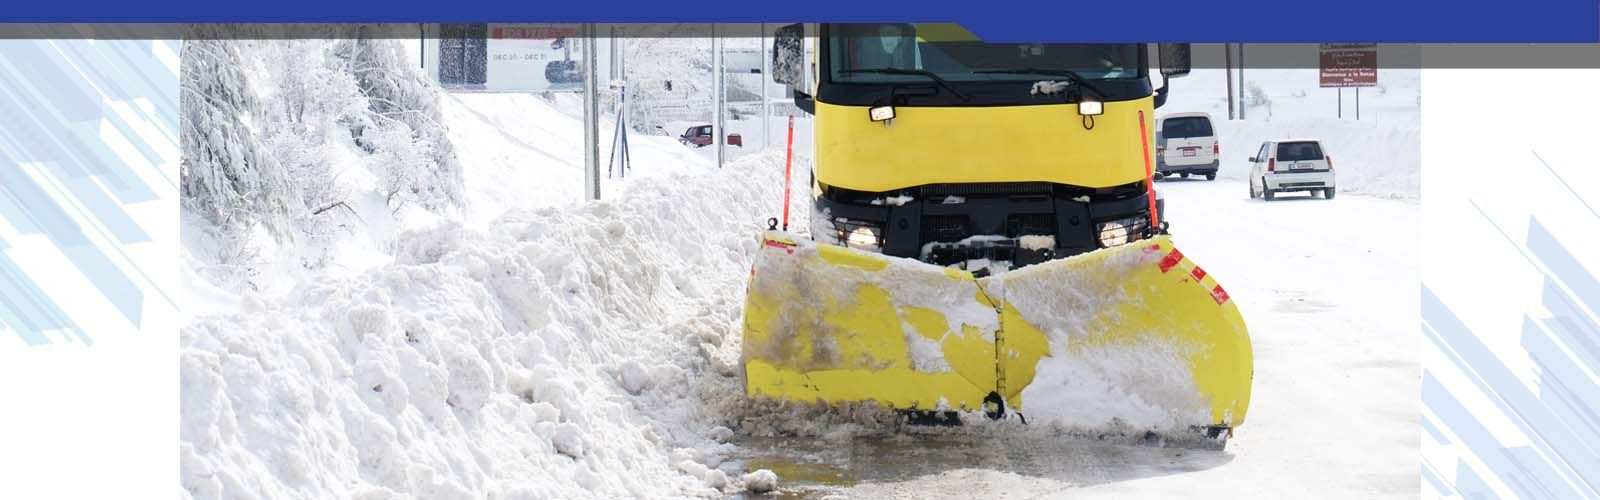 Snow service macchine per la viabilità invernale vomere 02